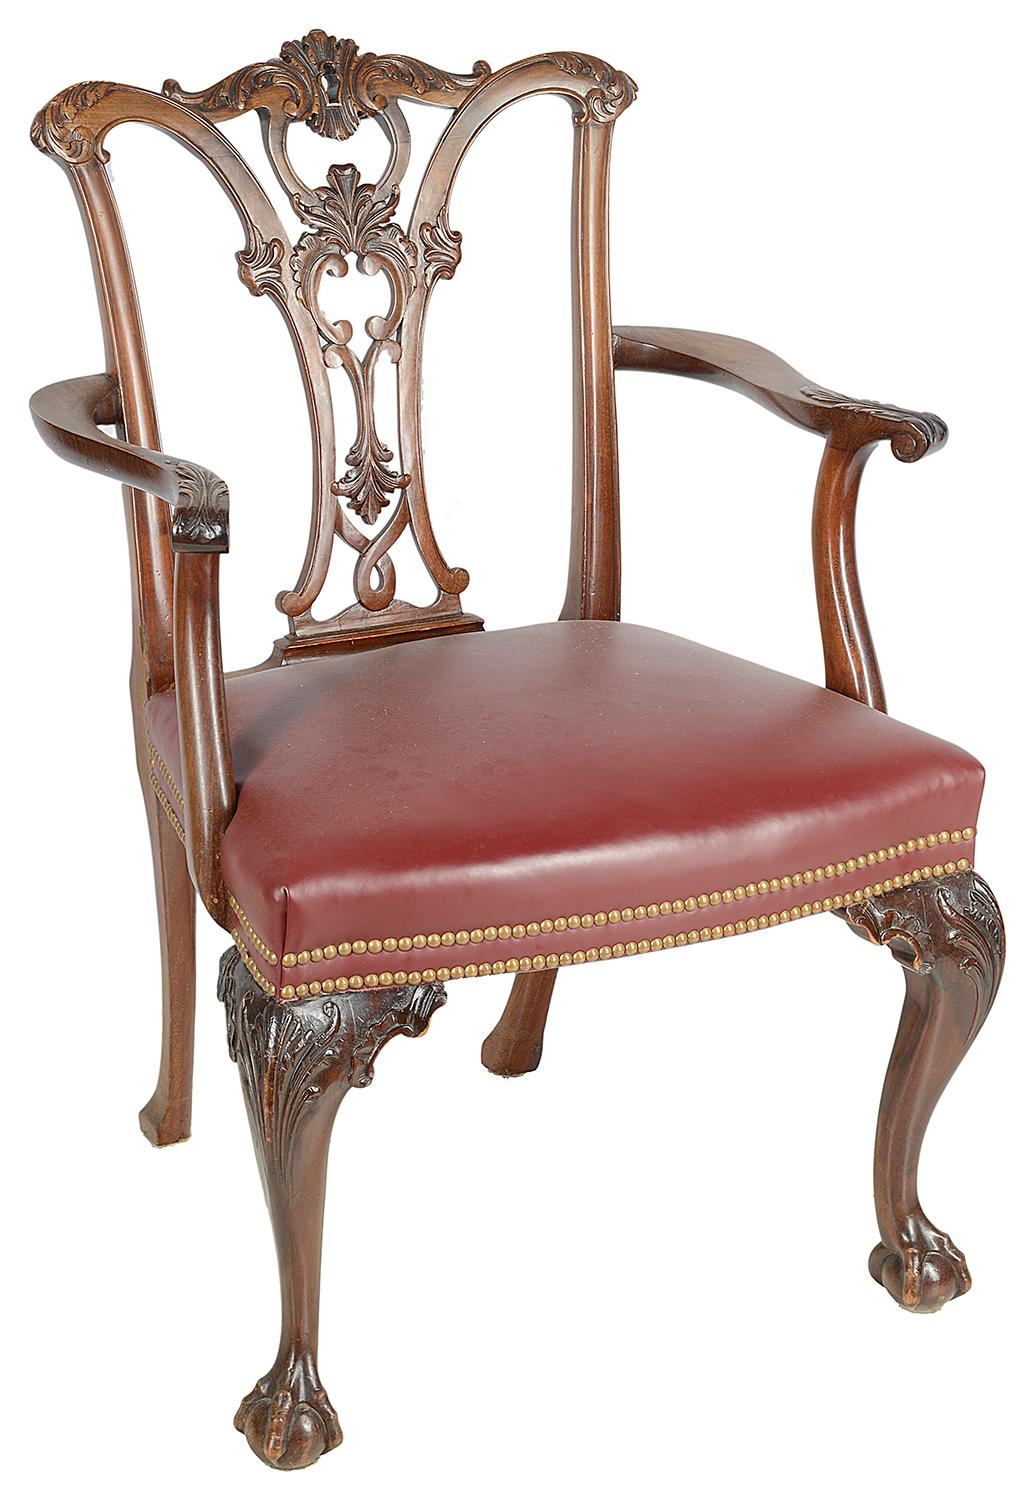 Un ensemble de bonne qualité de douze (10 + 2 bras) chaises de salle à manger en acajou de style Chippendale de la fin du 19ème siècle, chacune ayant de merveilleux dossiers sculptés et chantournés de volutes et de feuillages. Les sièges sont